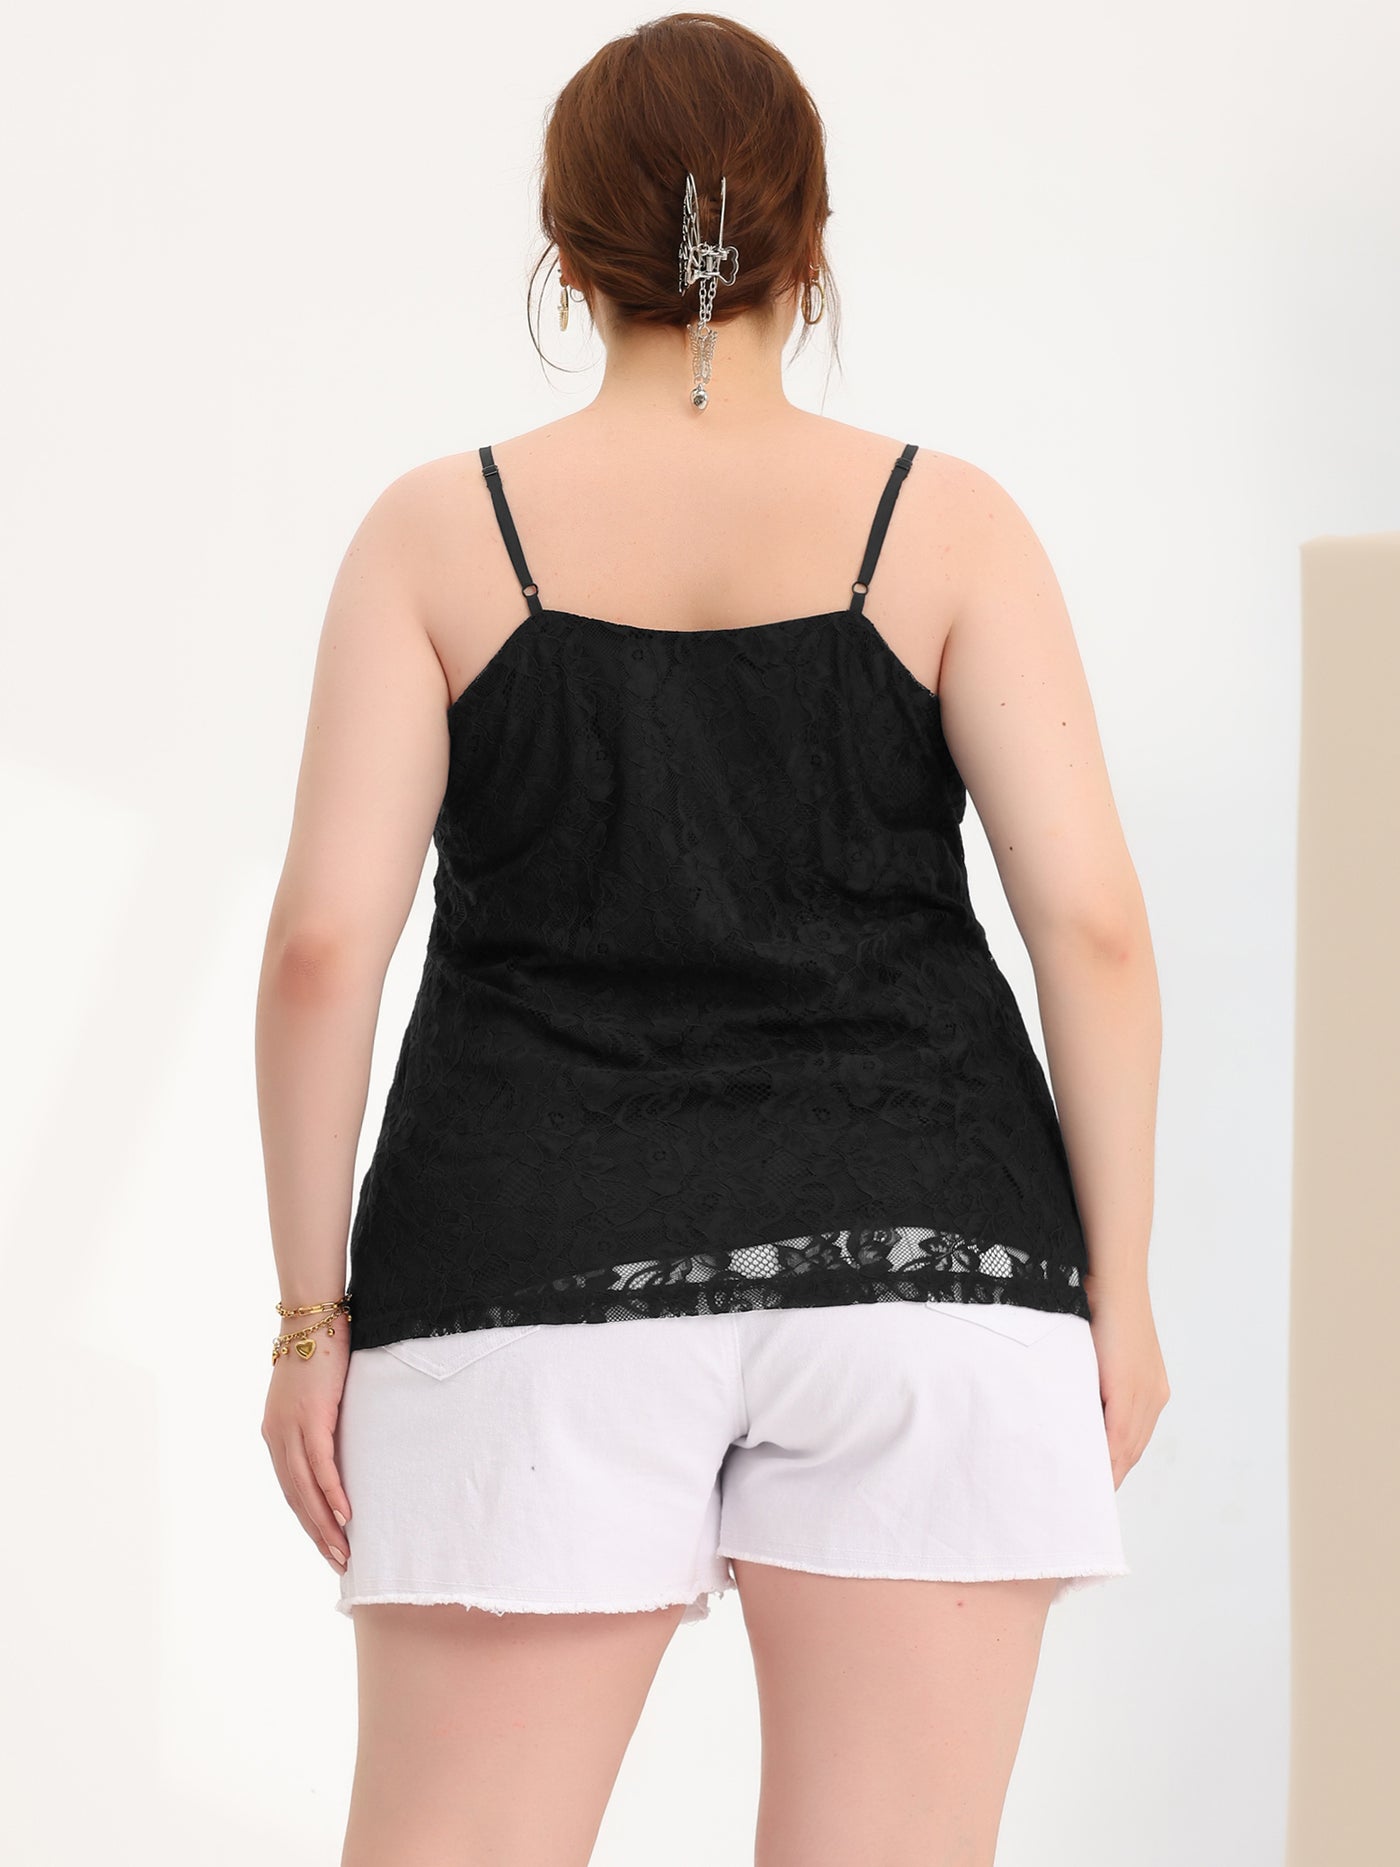 Bublédon Plus Size Cami Lace Adjustable Strap Elegant Camisole Tops